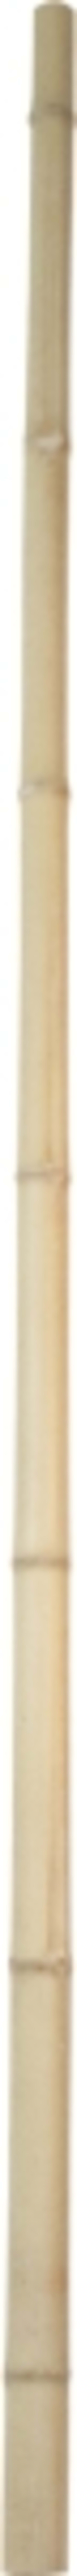 Windhager - Tuteur bambou déco L200 cm ø9 cm - Image 1